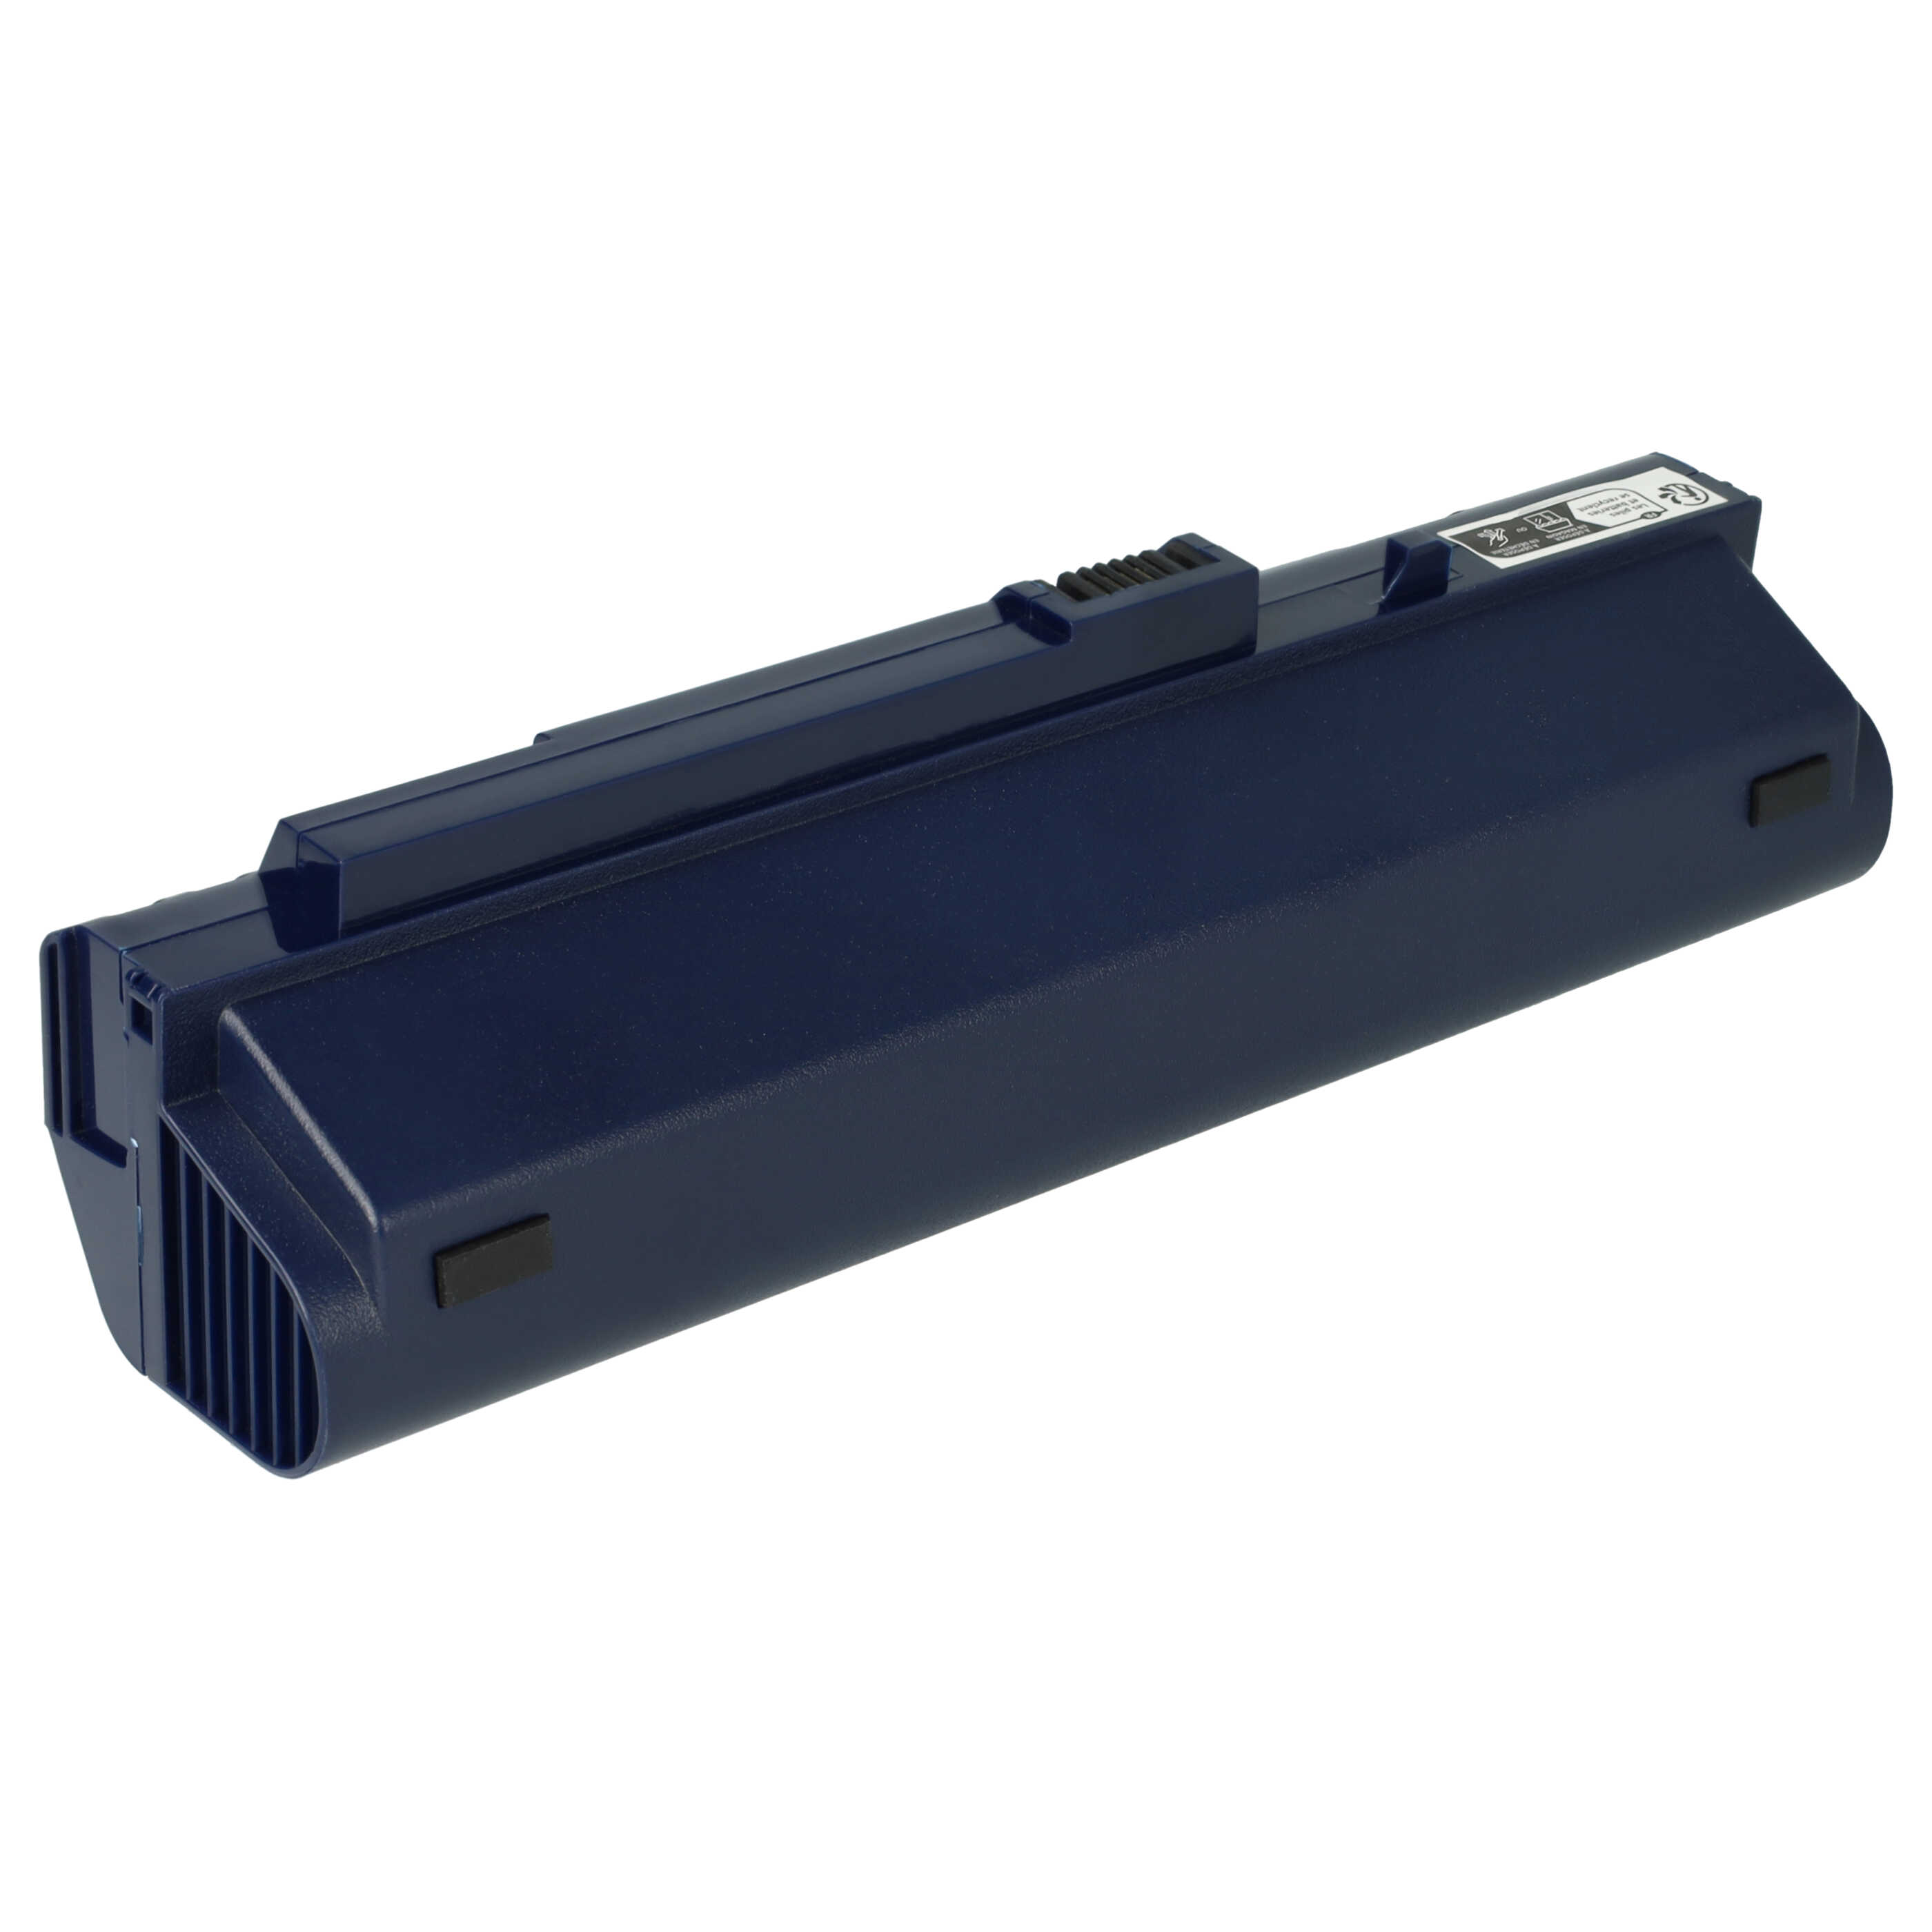 Batteria sostituisce Acer 934T2780F, BT.00605.035 per notebook Gateway - 6600mAh 11,1V Li-Ion blu scuro